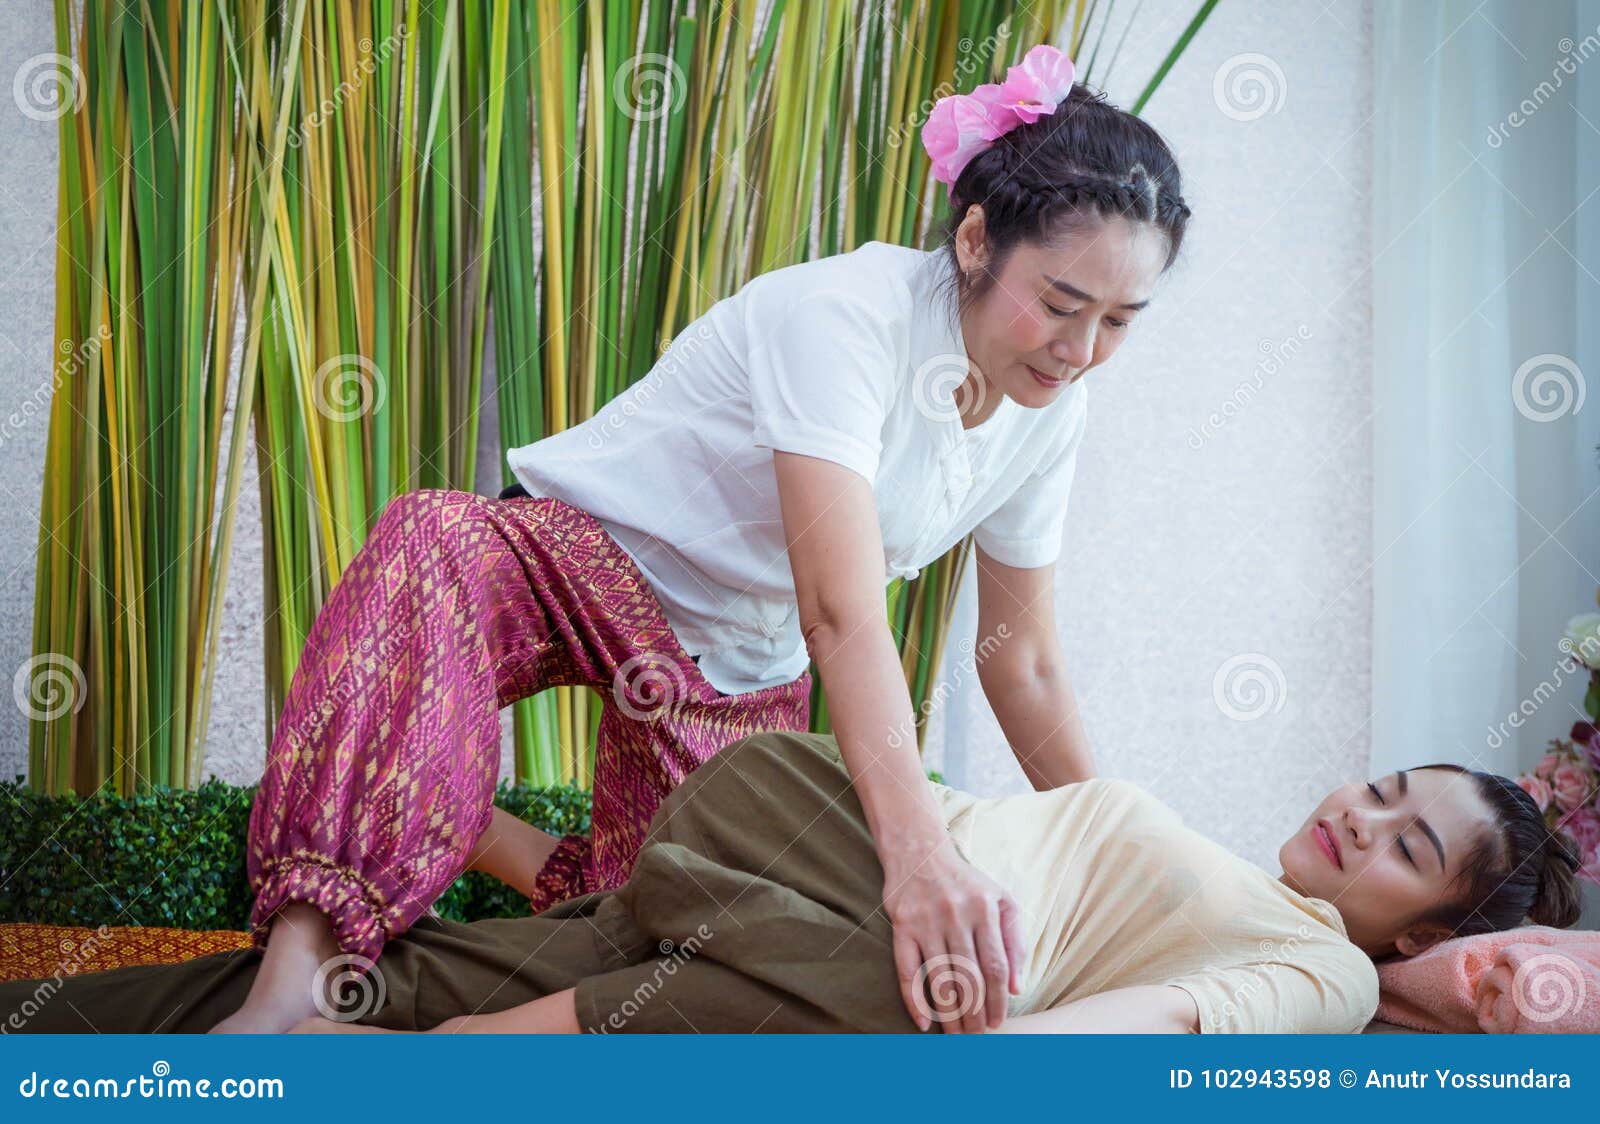 hot asian lesbian massage gallerie